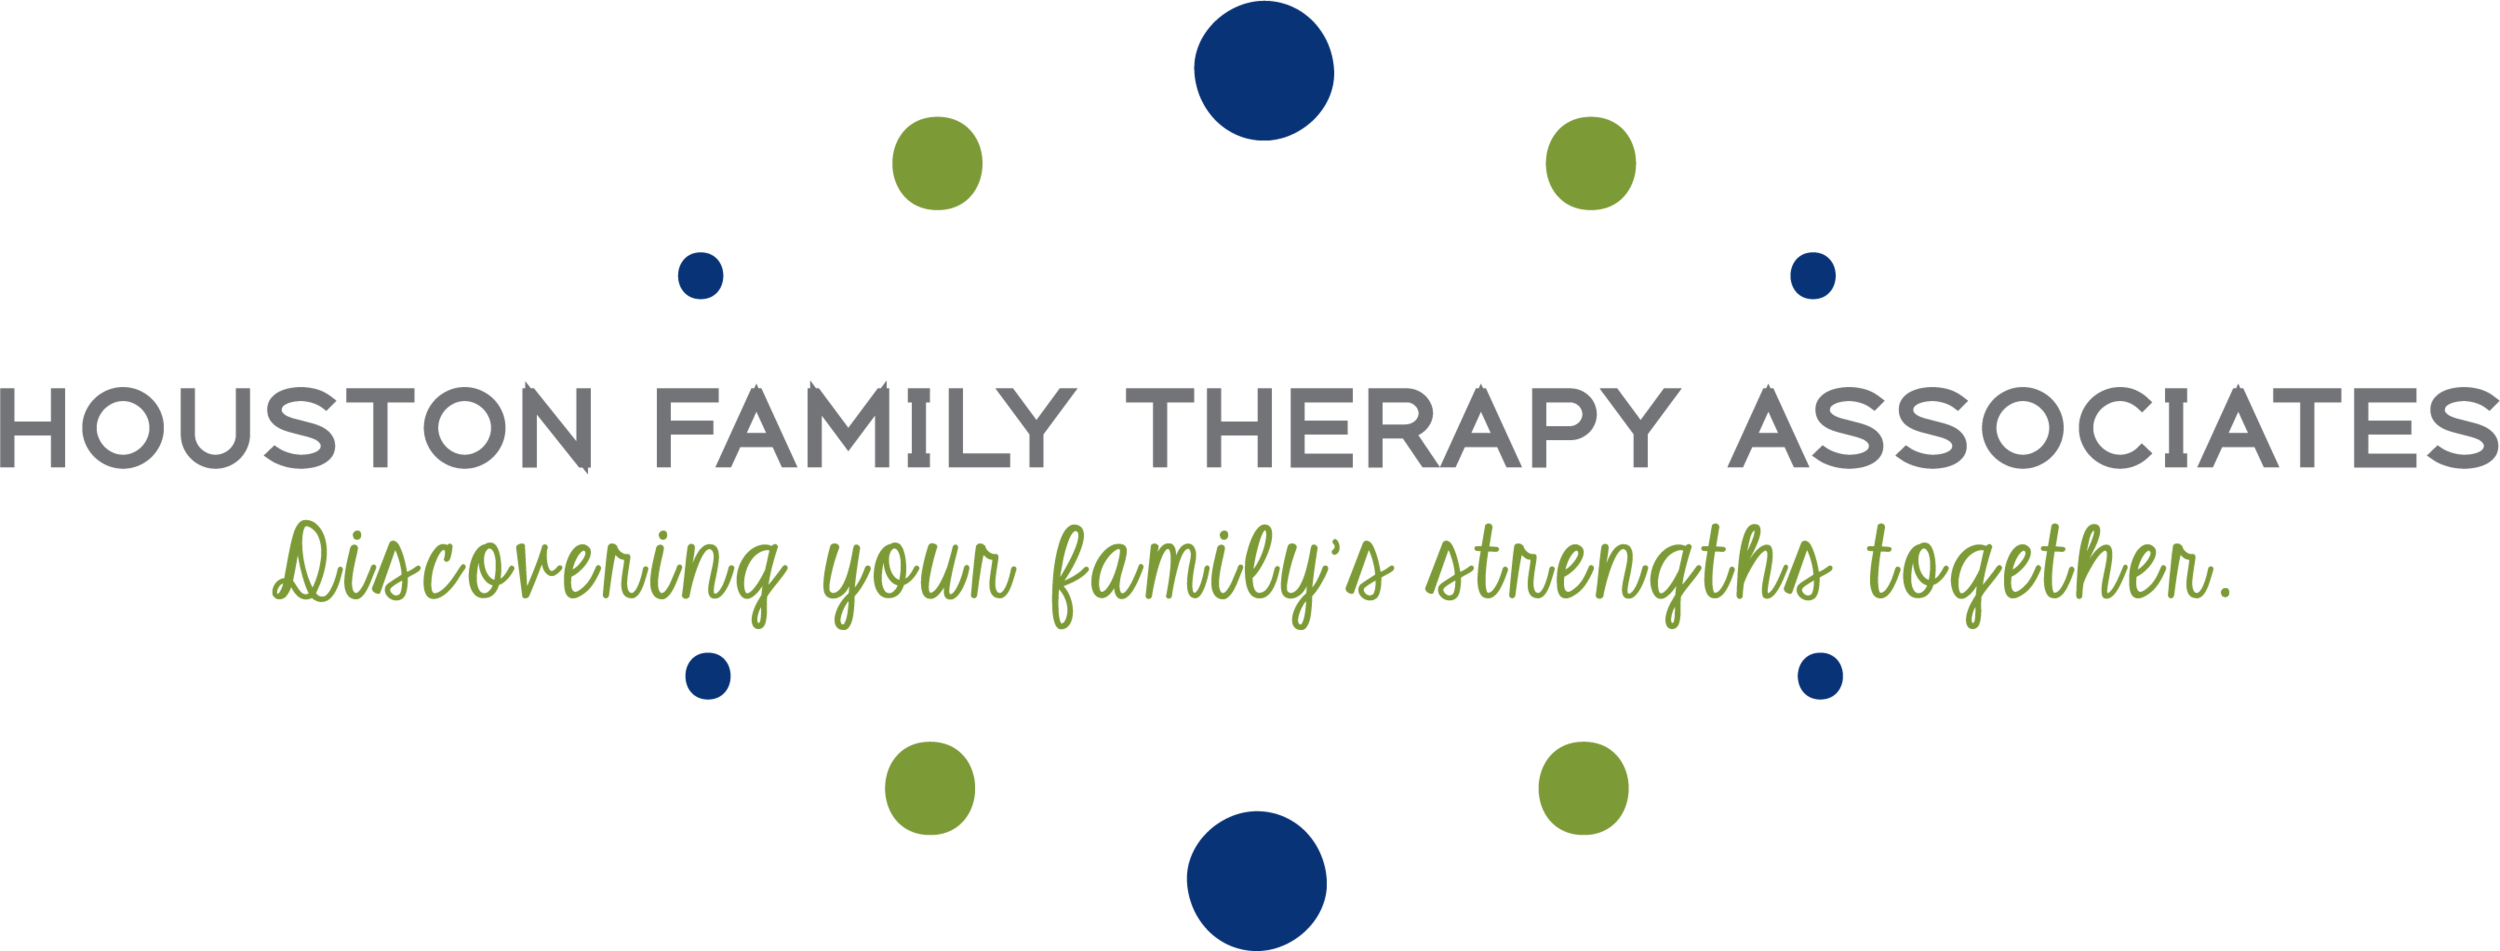 Houston Family Therapy Associates